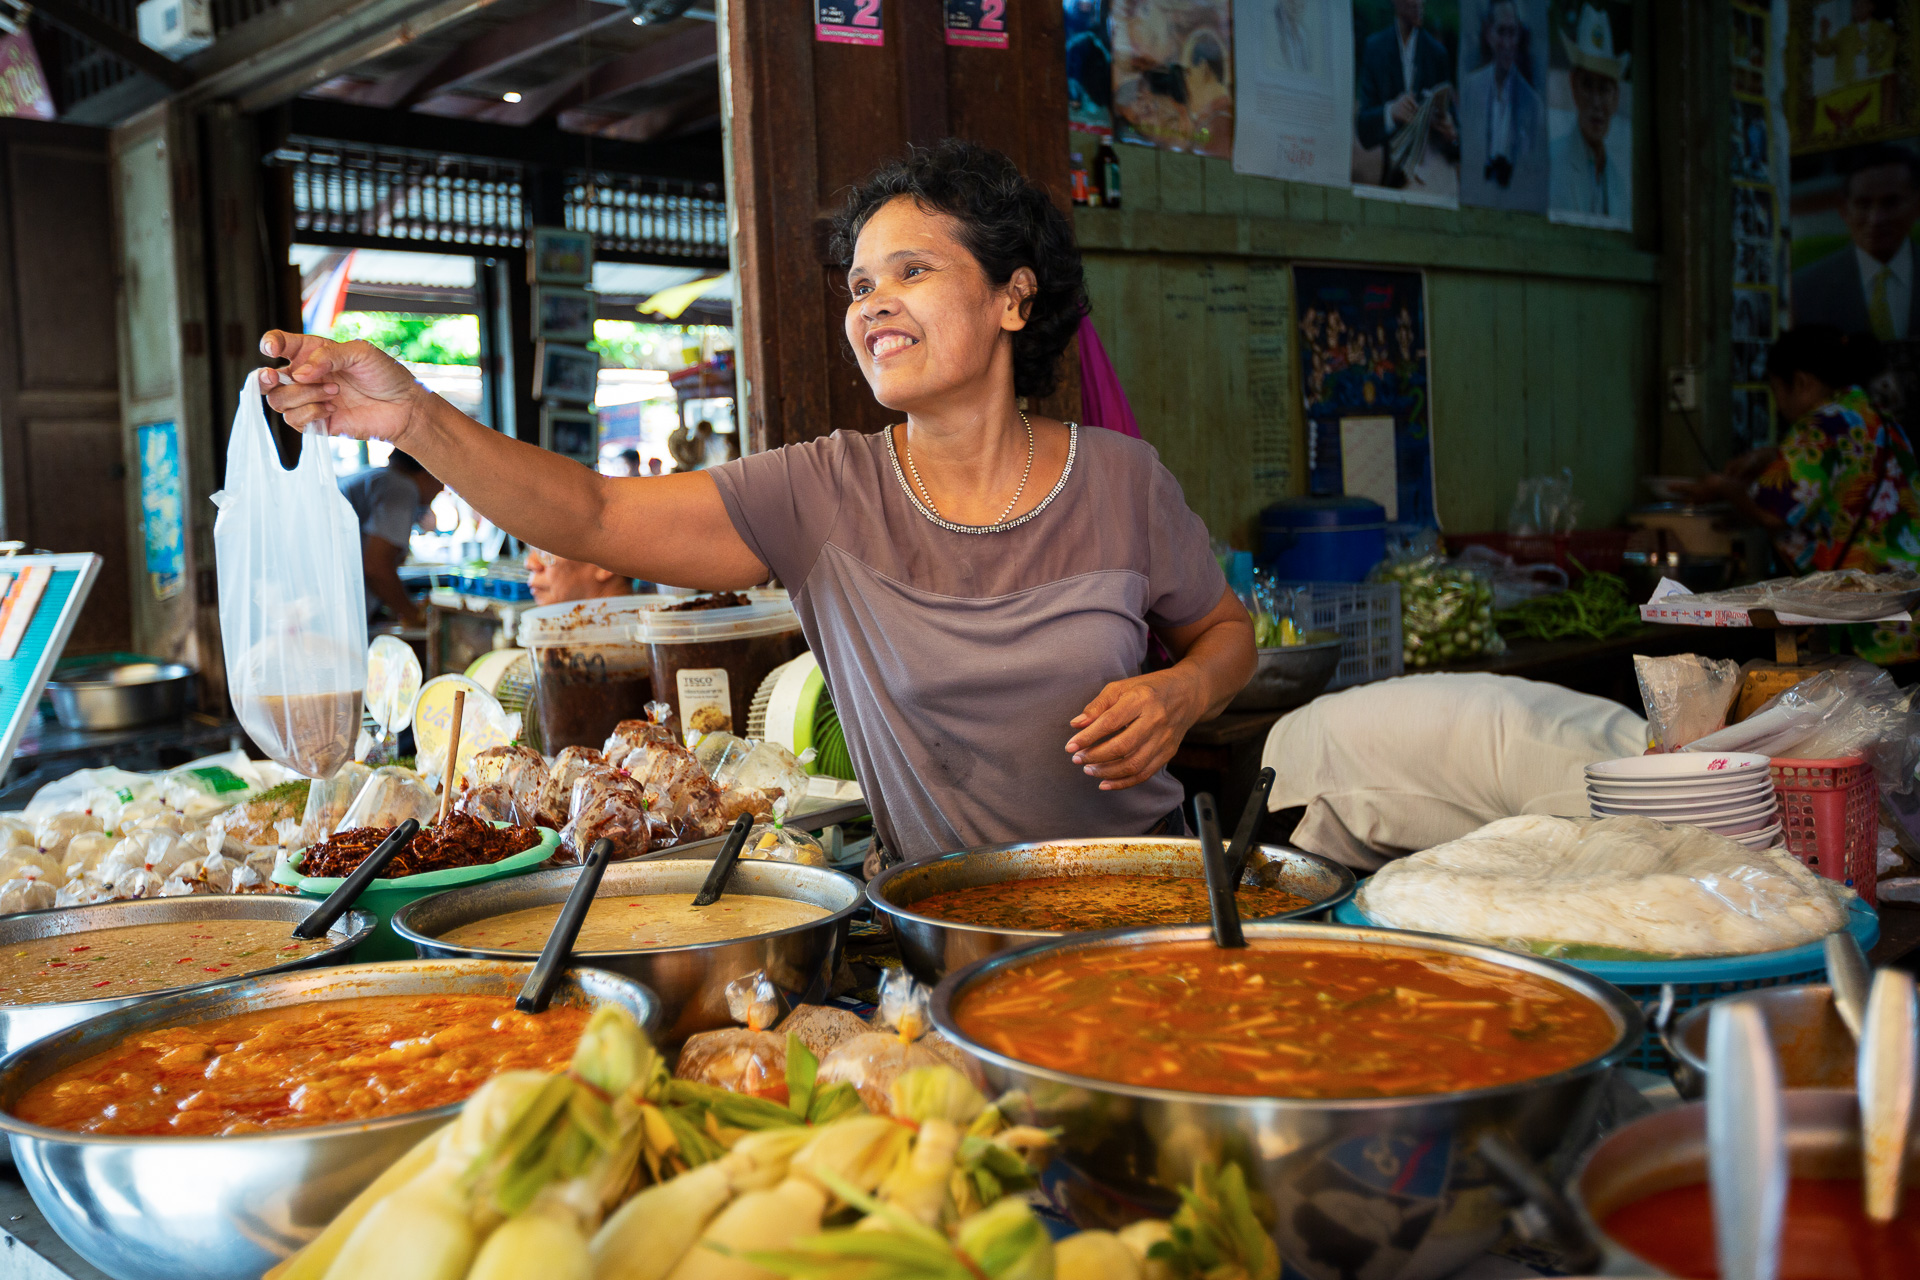 Die FOTOFÜCHSE Wunschorte. Eine ausgiebige kulinarische Reise quer durch das exotische Gaumenparadies Thailand planen. Streetfood. Hunger!